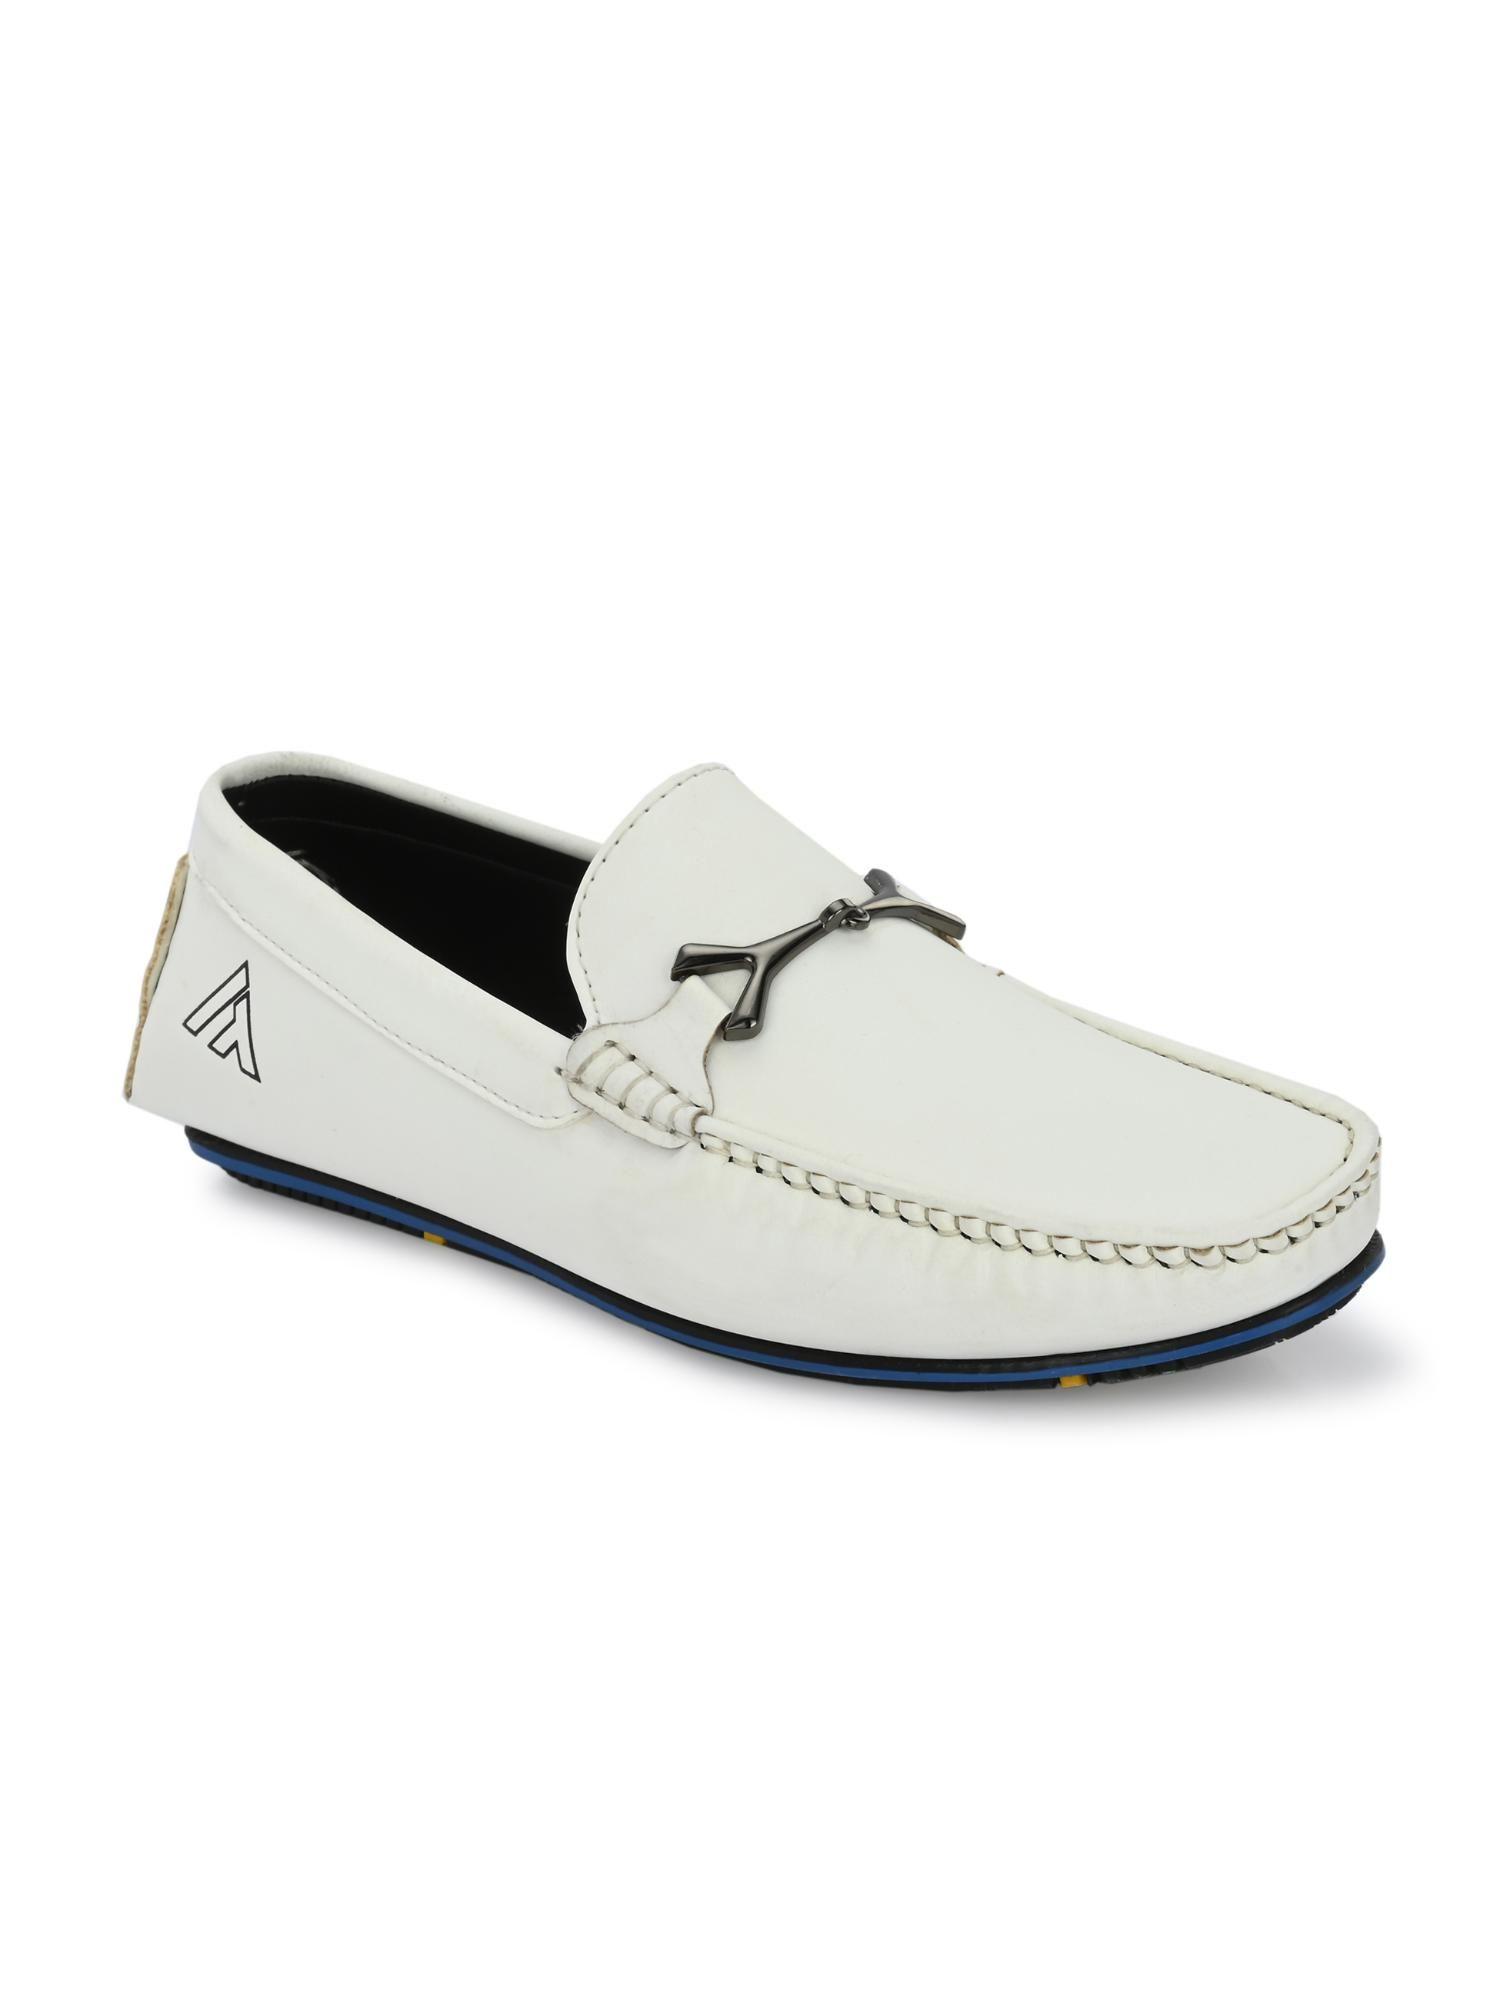 trendy-silicon-muti-coloured-anti-slip-714-vibrant-white-loafers